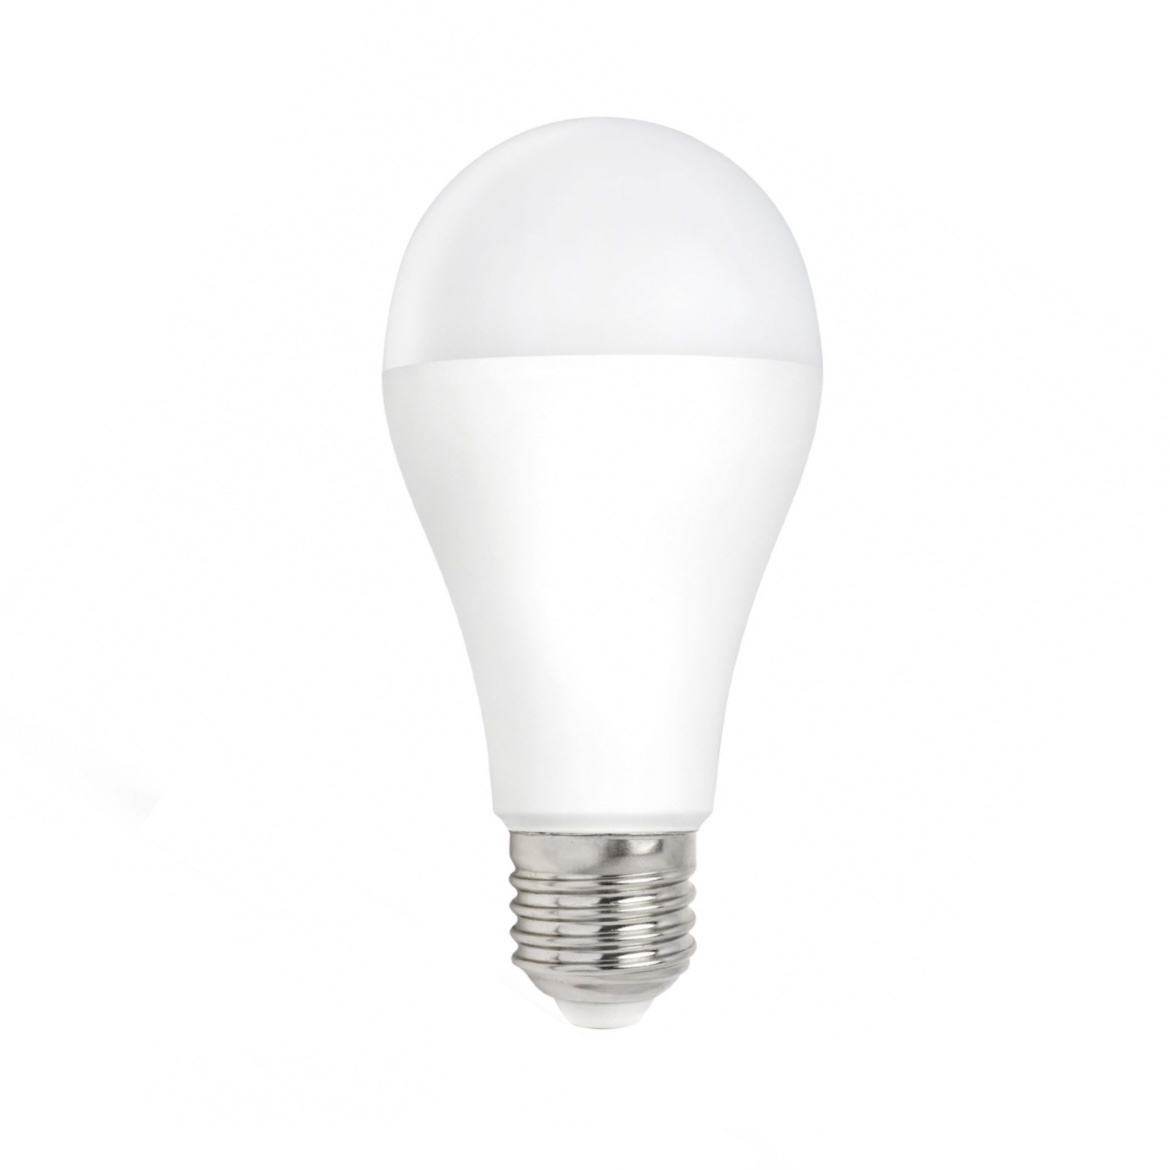 kraan analyseren Verliefd LED lamp - E27 fitting - 15W vervangt 120W - Daglicht wit 6000K -  Ledlichtdiscounter.nl